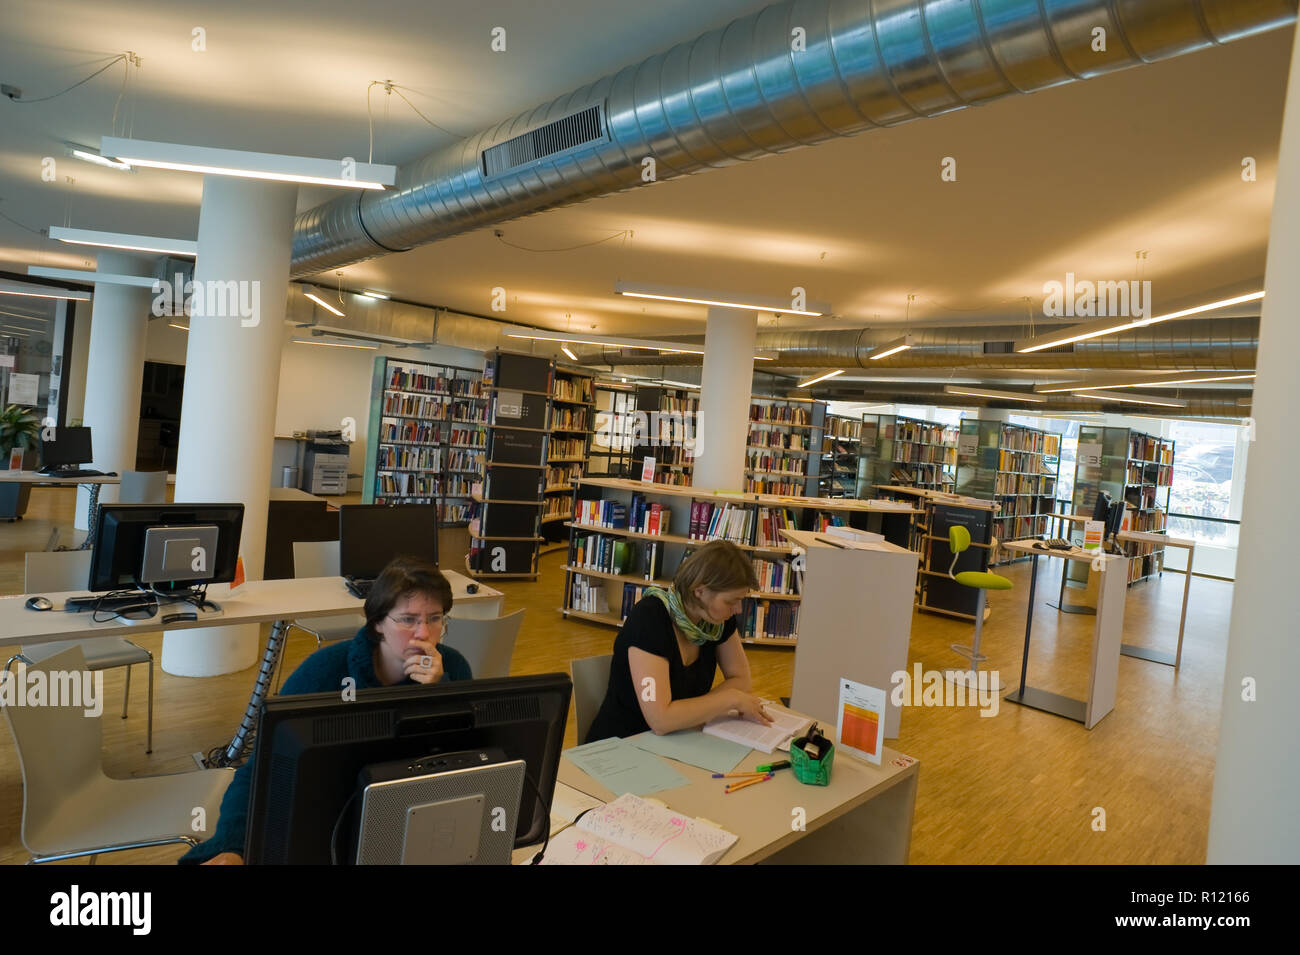 Österreichische Forschungsstiftung für Internationale Entwicklung, Bibliothek - Library Stock Photo